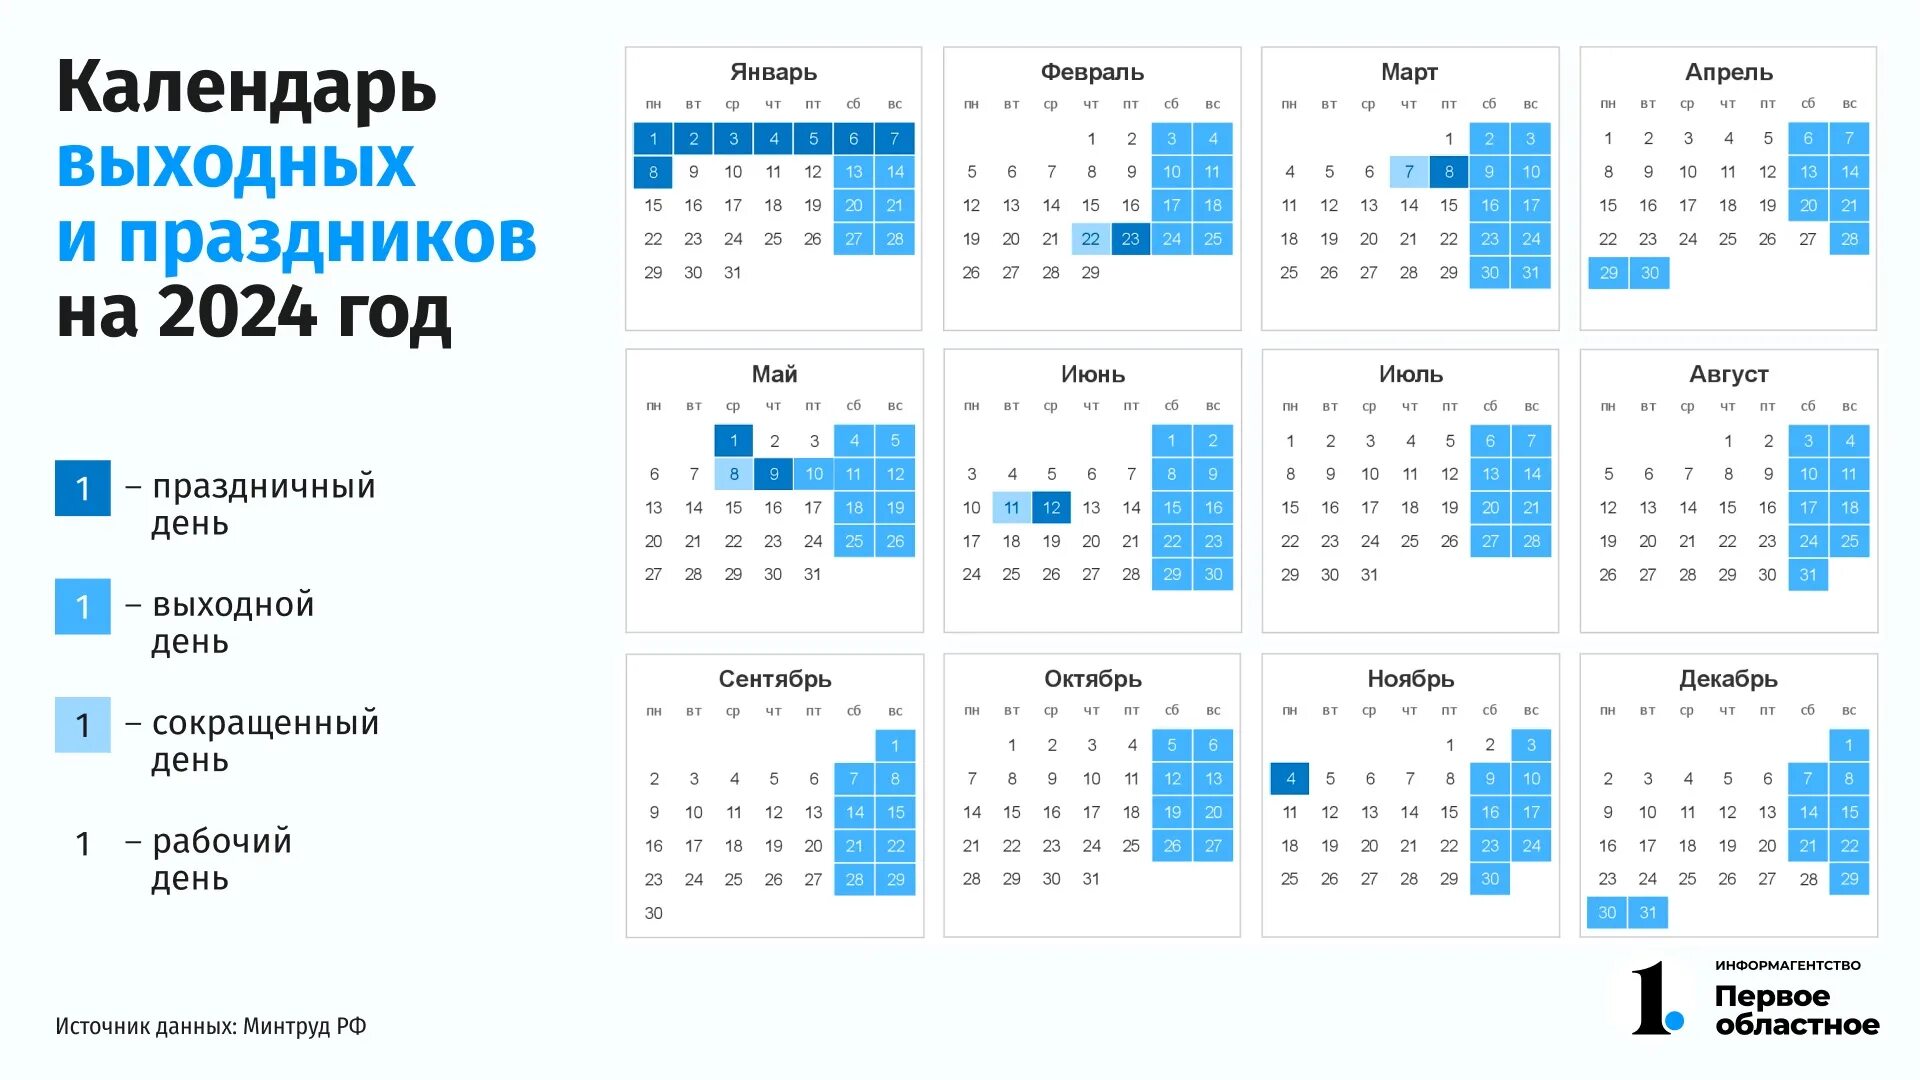 Календарь праздников рабочих дней на 2024 год. Выходные дни в 2024г. Выходные дни в 2024 году. Праздничные и выходные дни на этот год. Праздники в 2024 году рабочие и нерабочие дни.